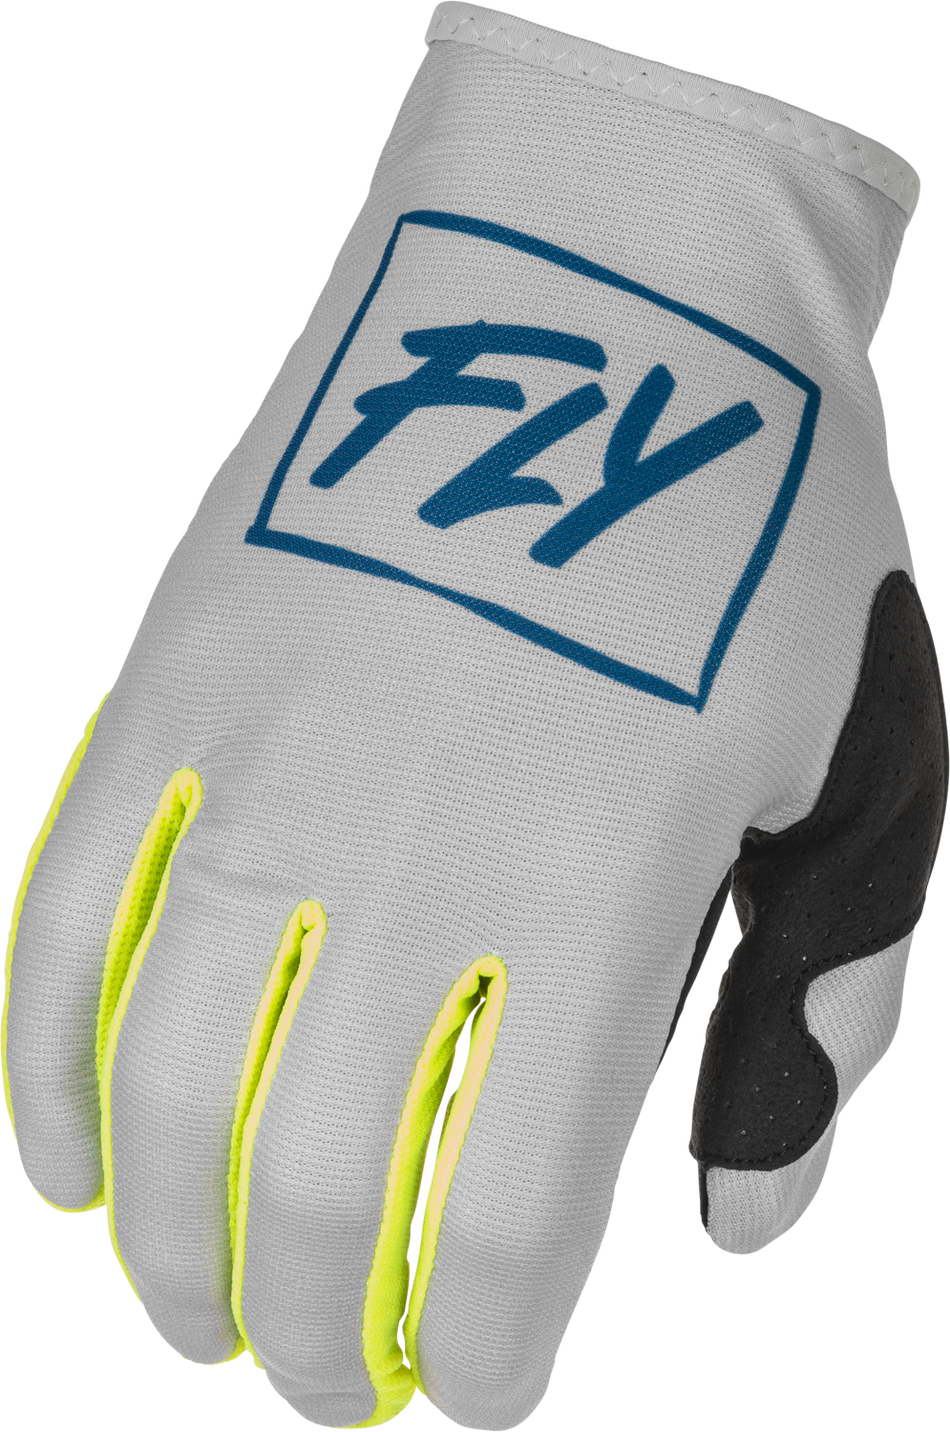 FLY RACING Youth Lite Gloves Grey/Teal/Hi-Vis Ys 375-711YS